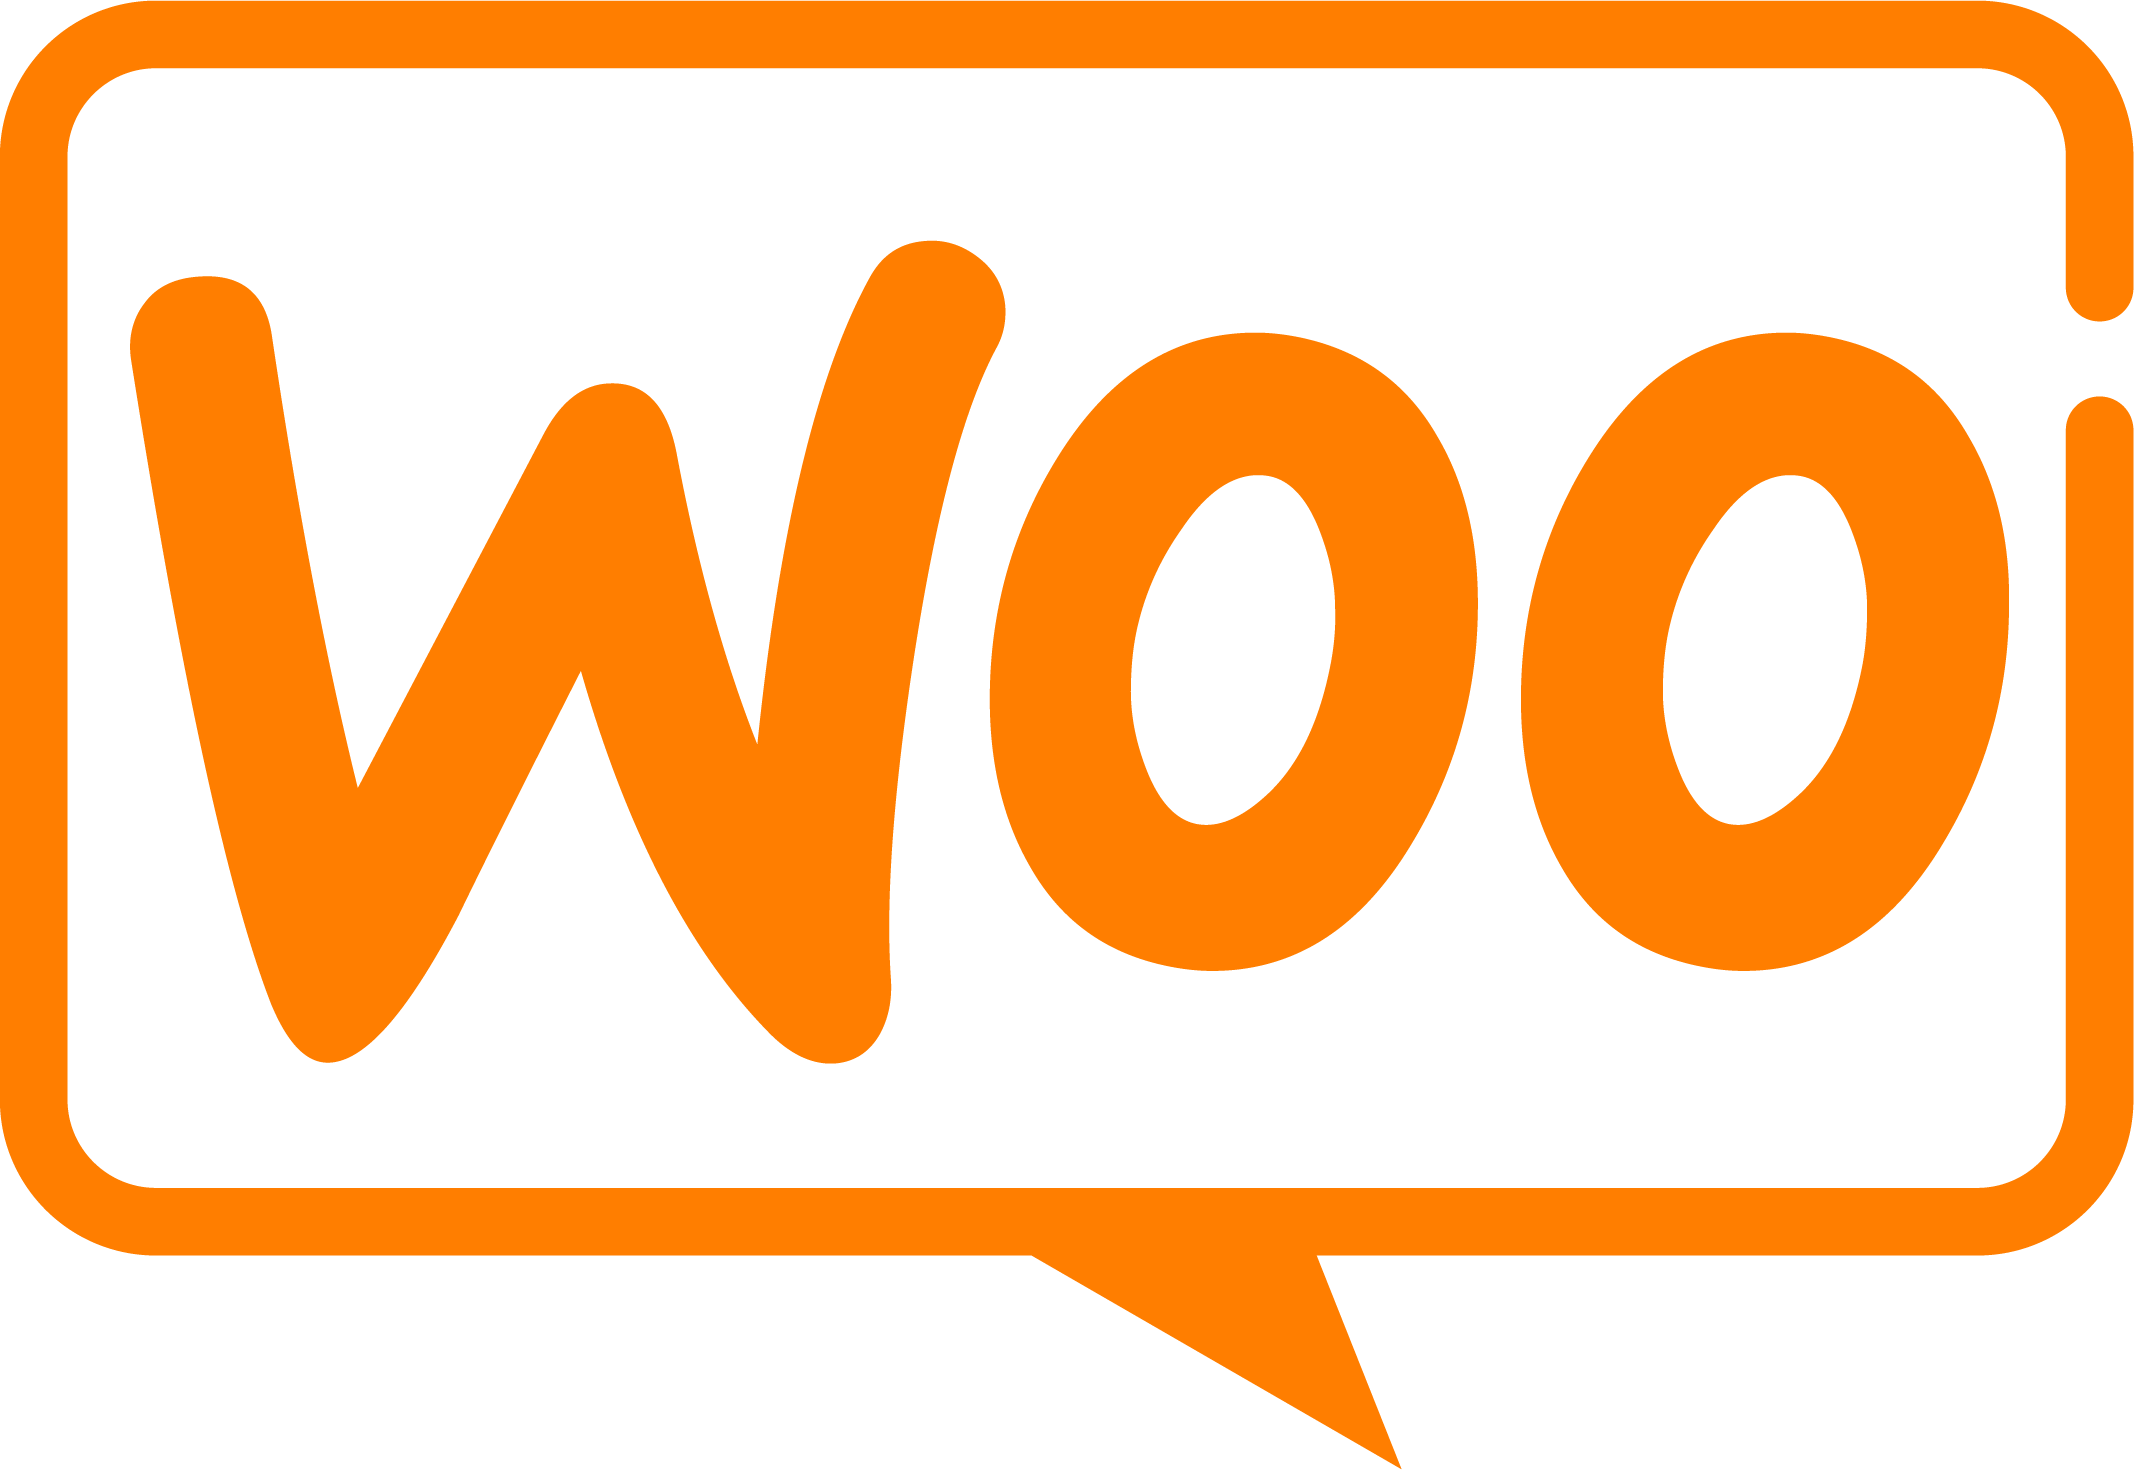 WooCommerce